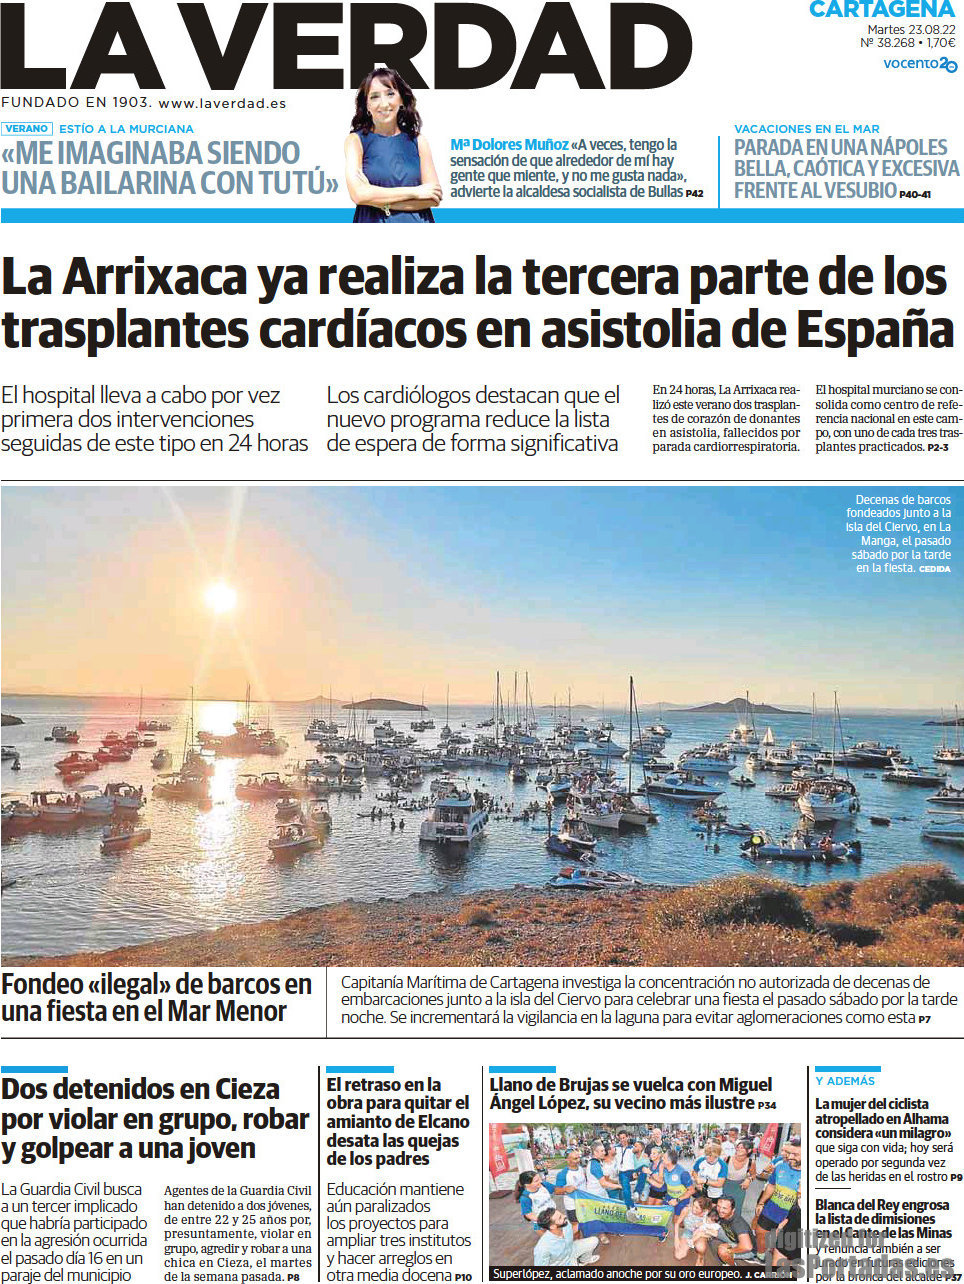 La Verdad Cartagena